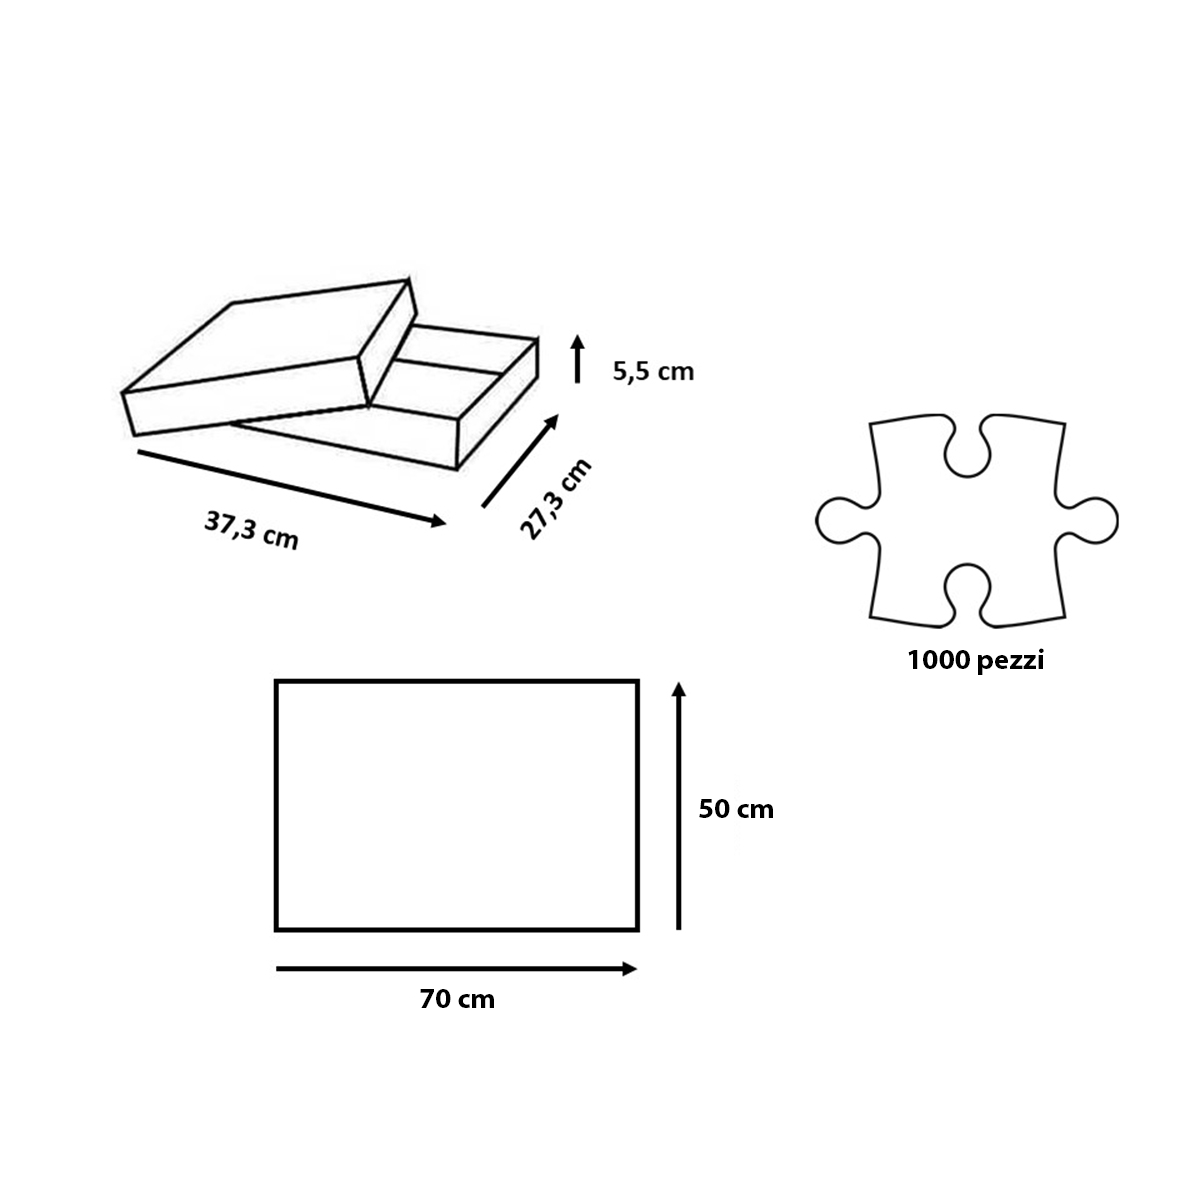 Ravensburger puzzle per adulti - 1000 pezzi - roma colosseo - dimensione puzzle: 50x70 cm - formato verticale - RAVENSBURGER